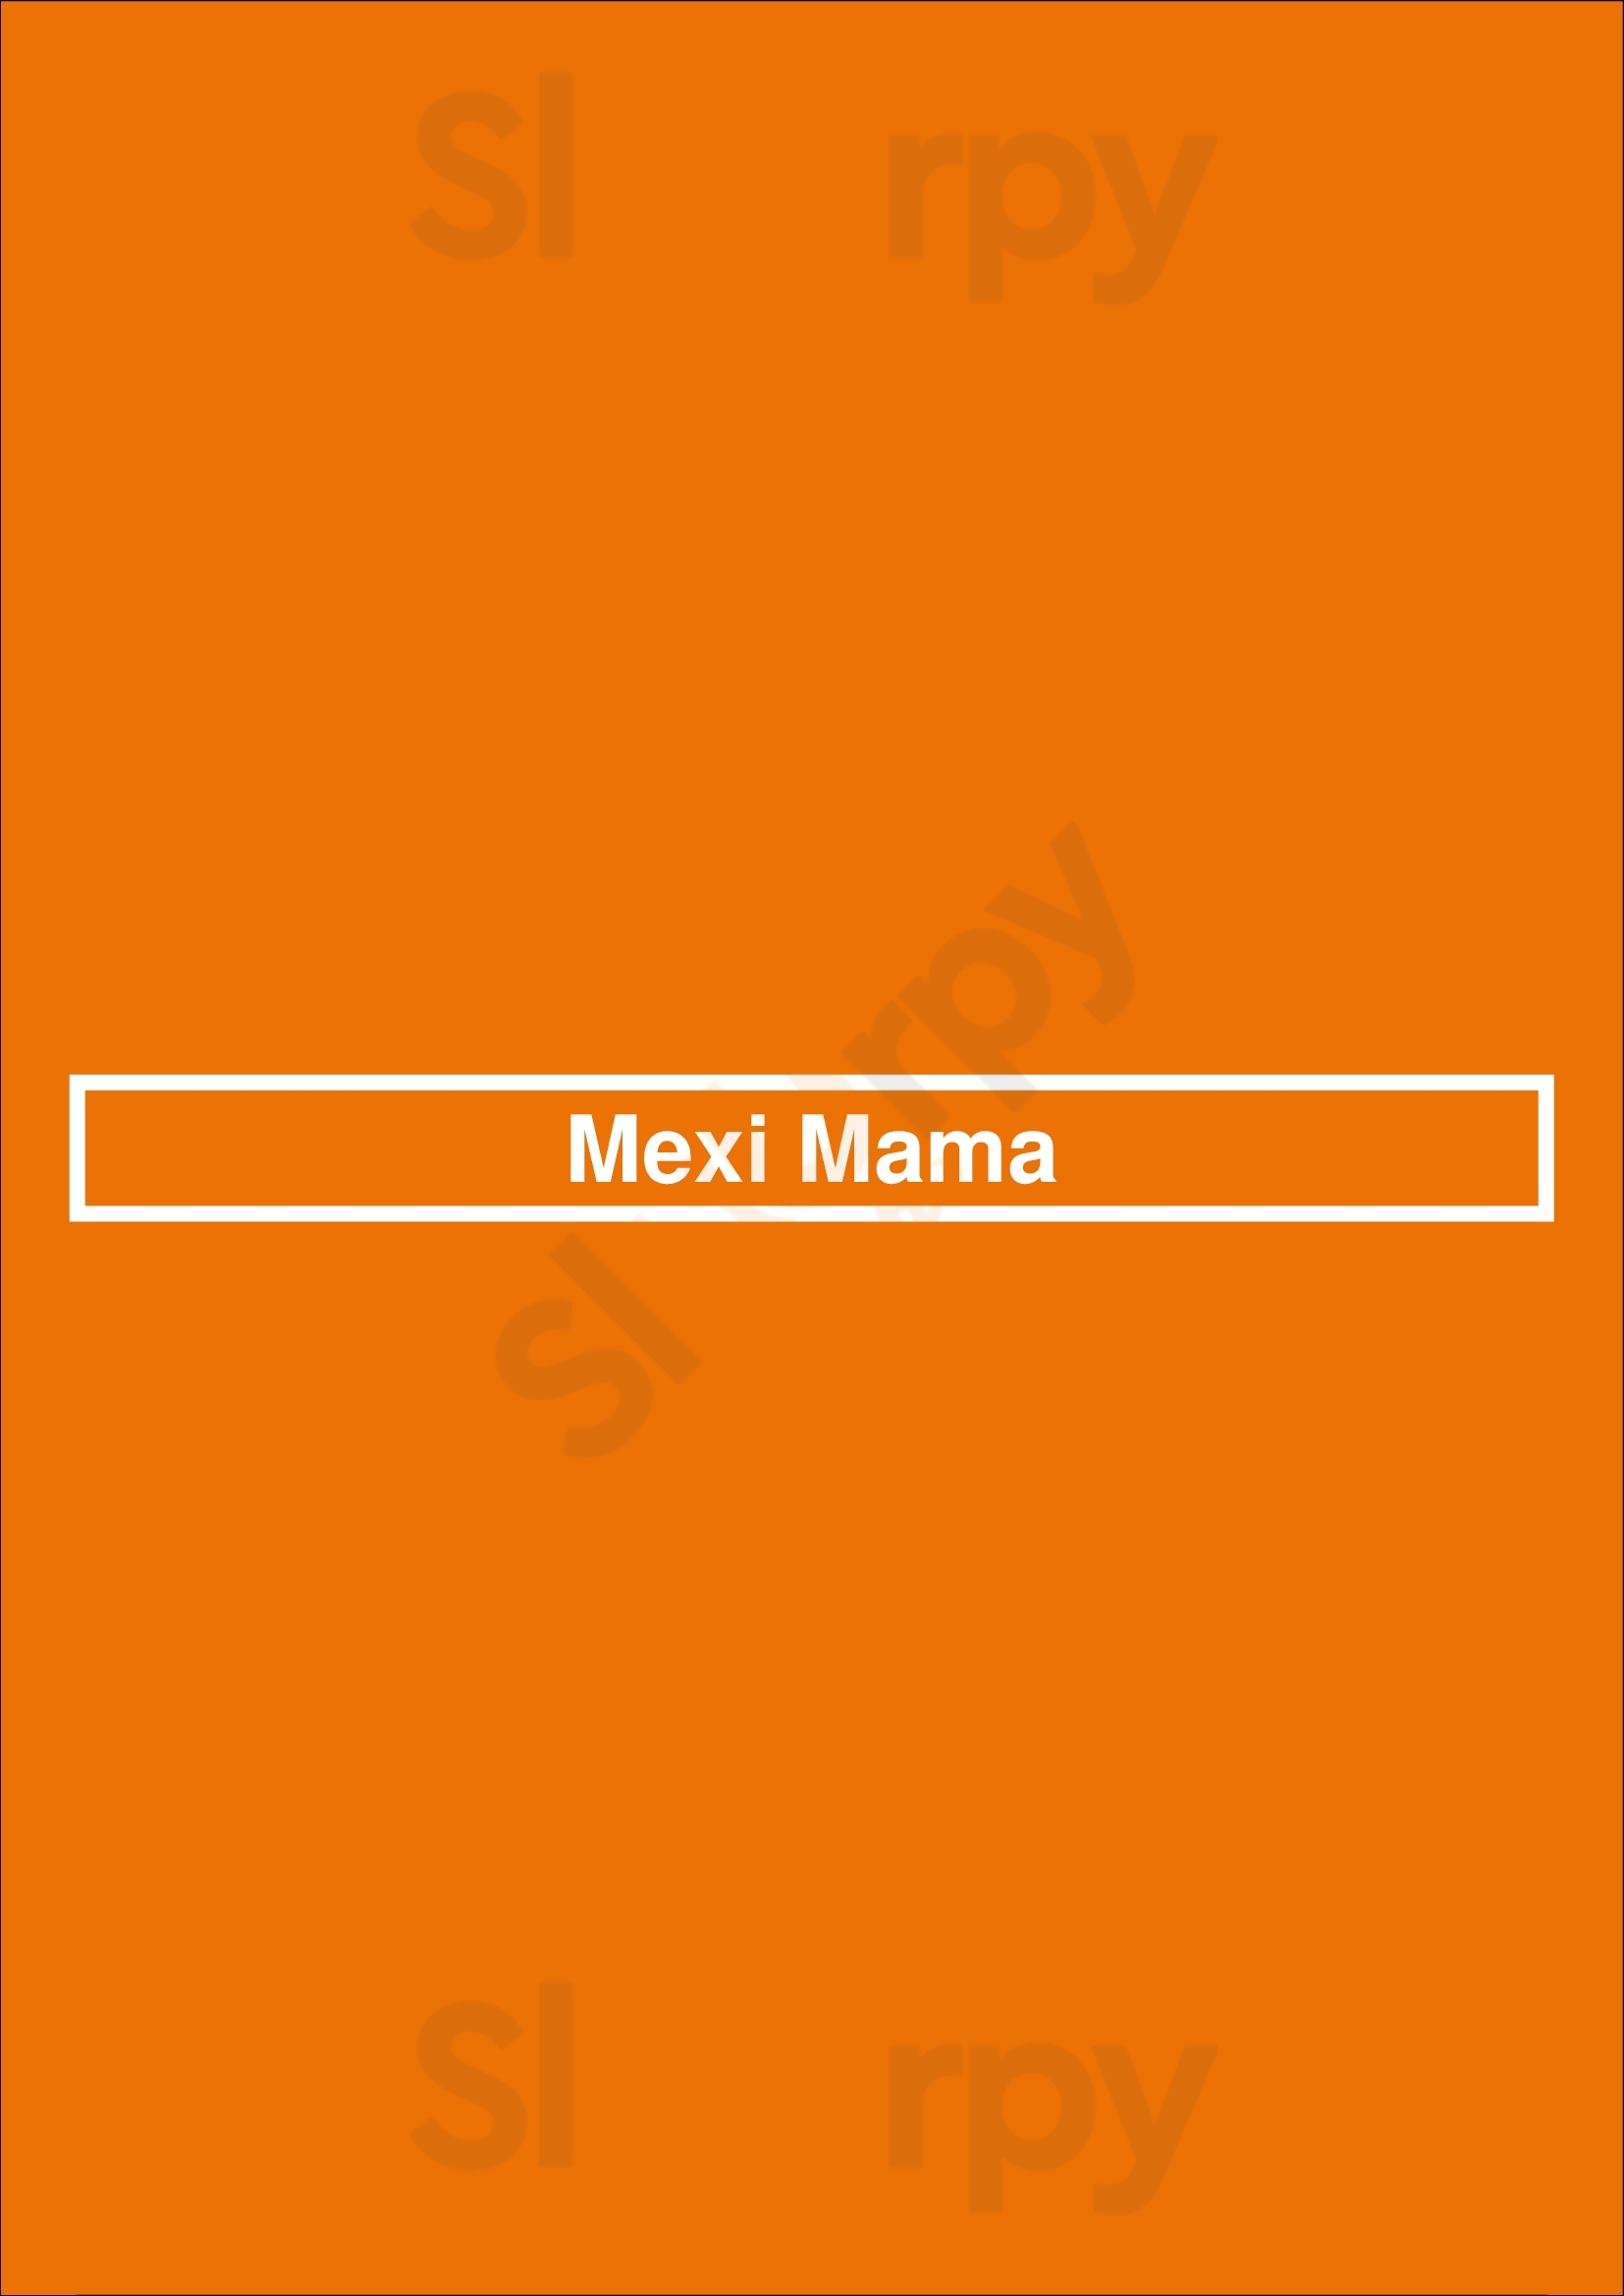 Mexi Mama Napier Menu - 1